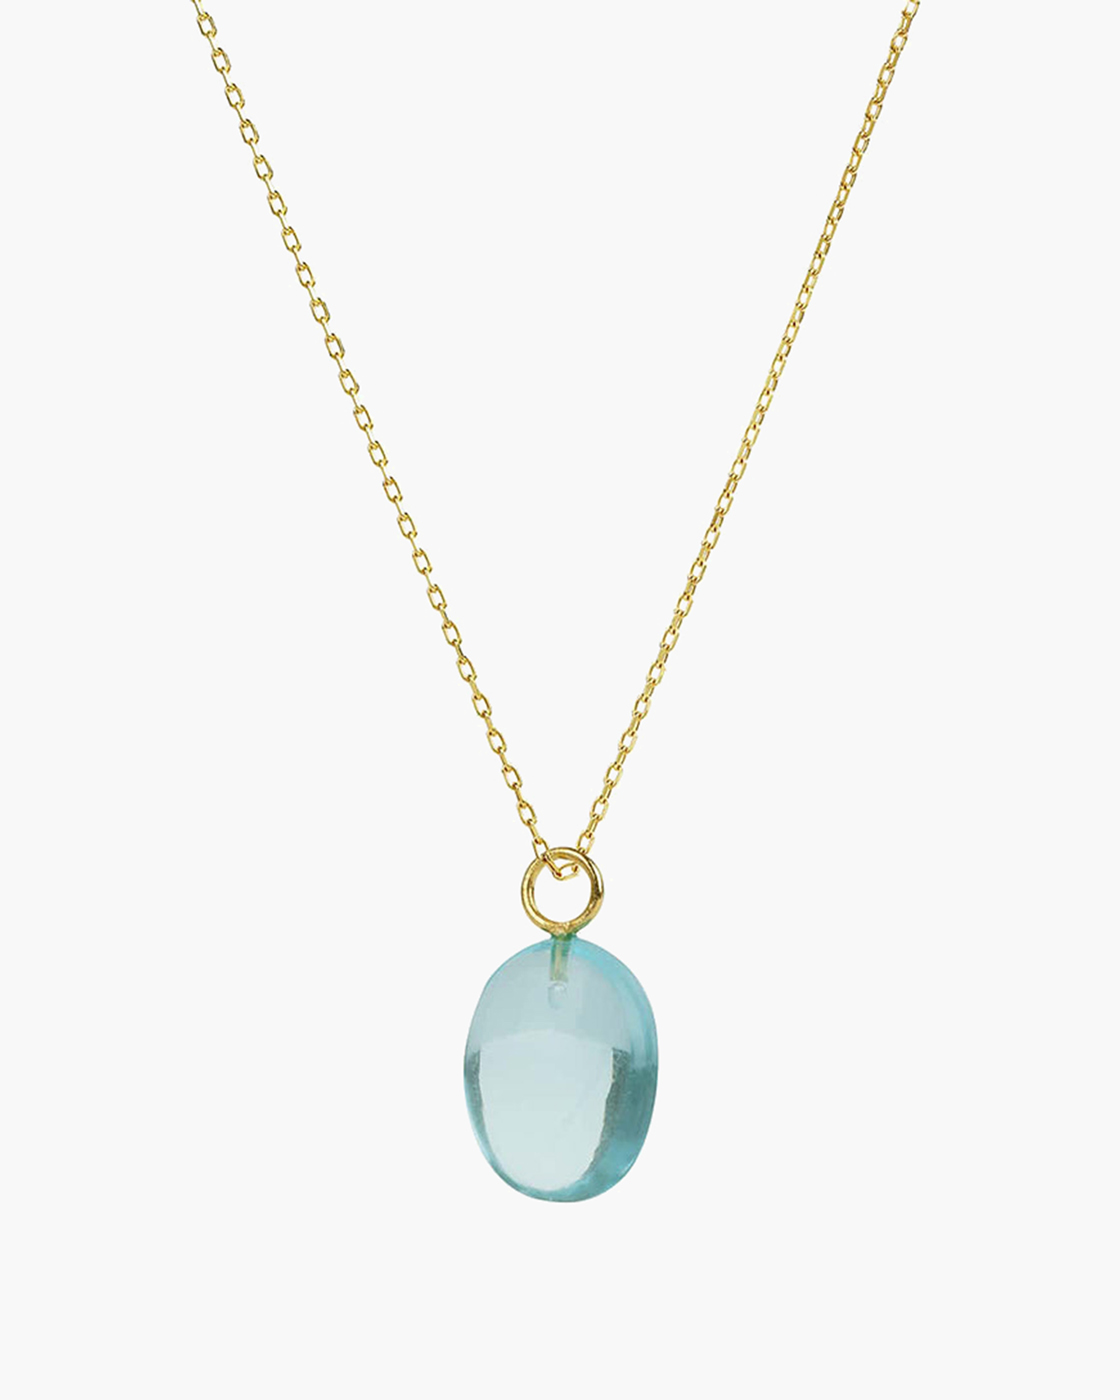 Eden Gold Chain Necklace with Blue Quartz Pendant